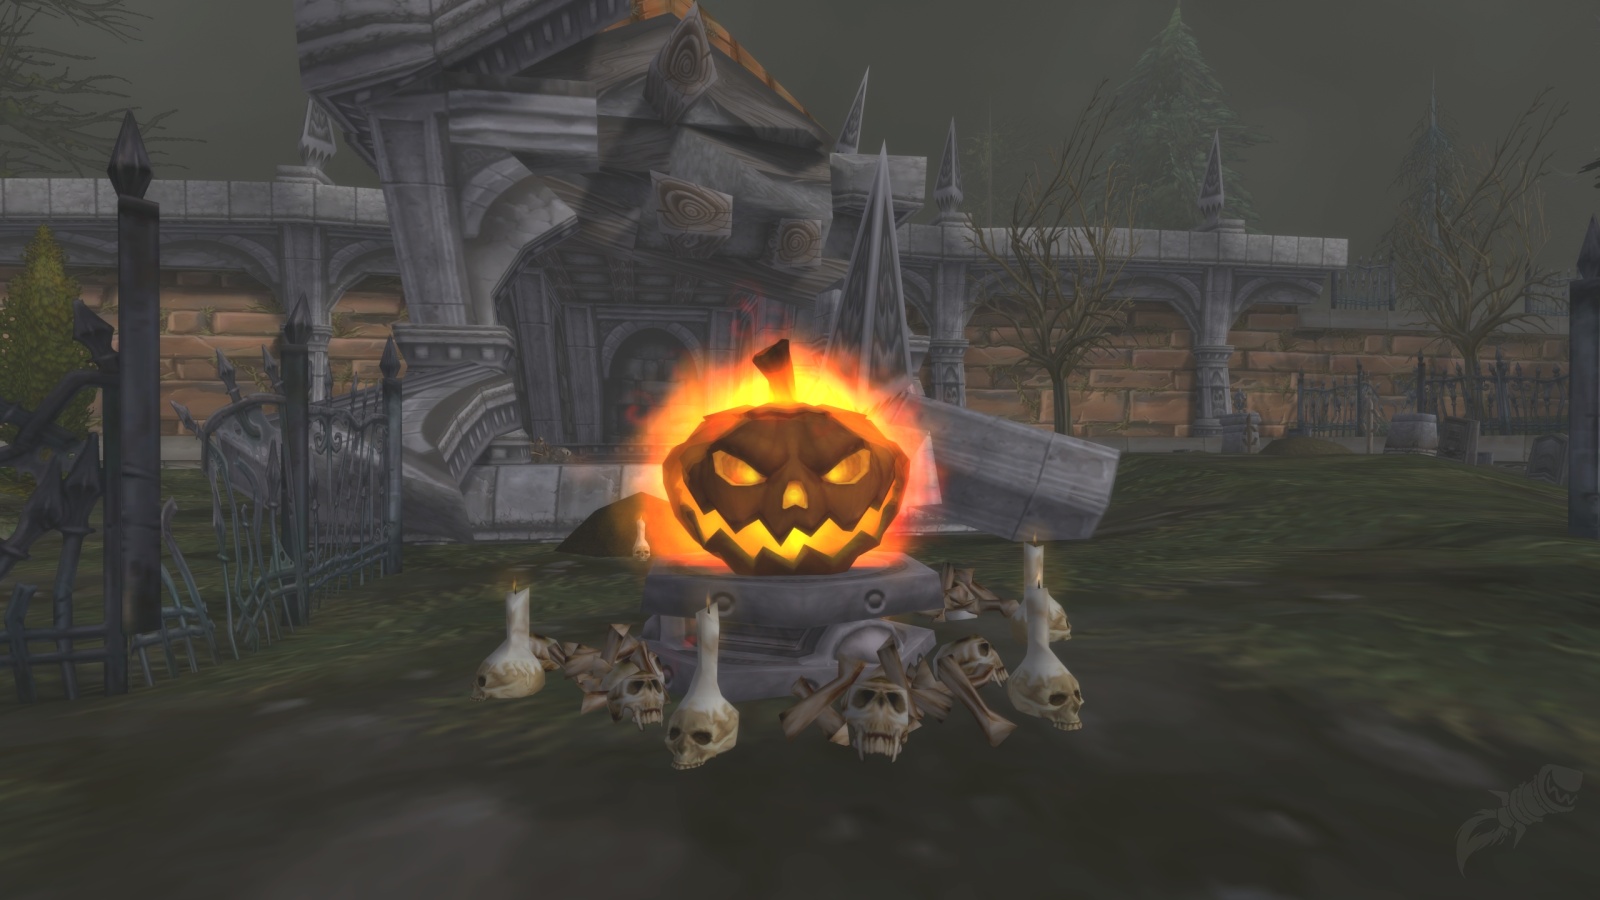 Halloween Pumpkin Fire Headless Horseman